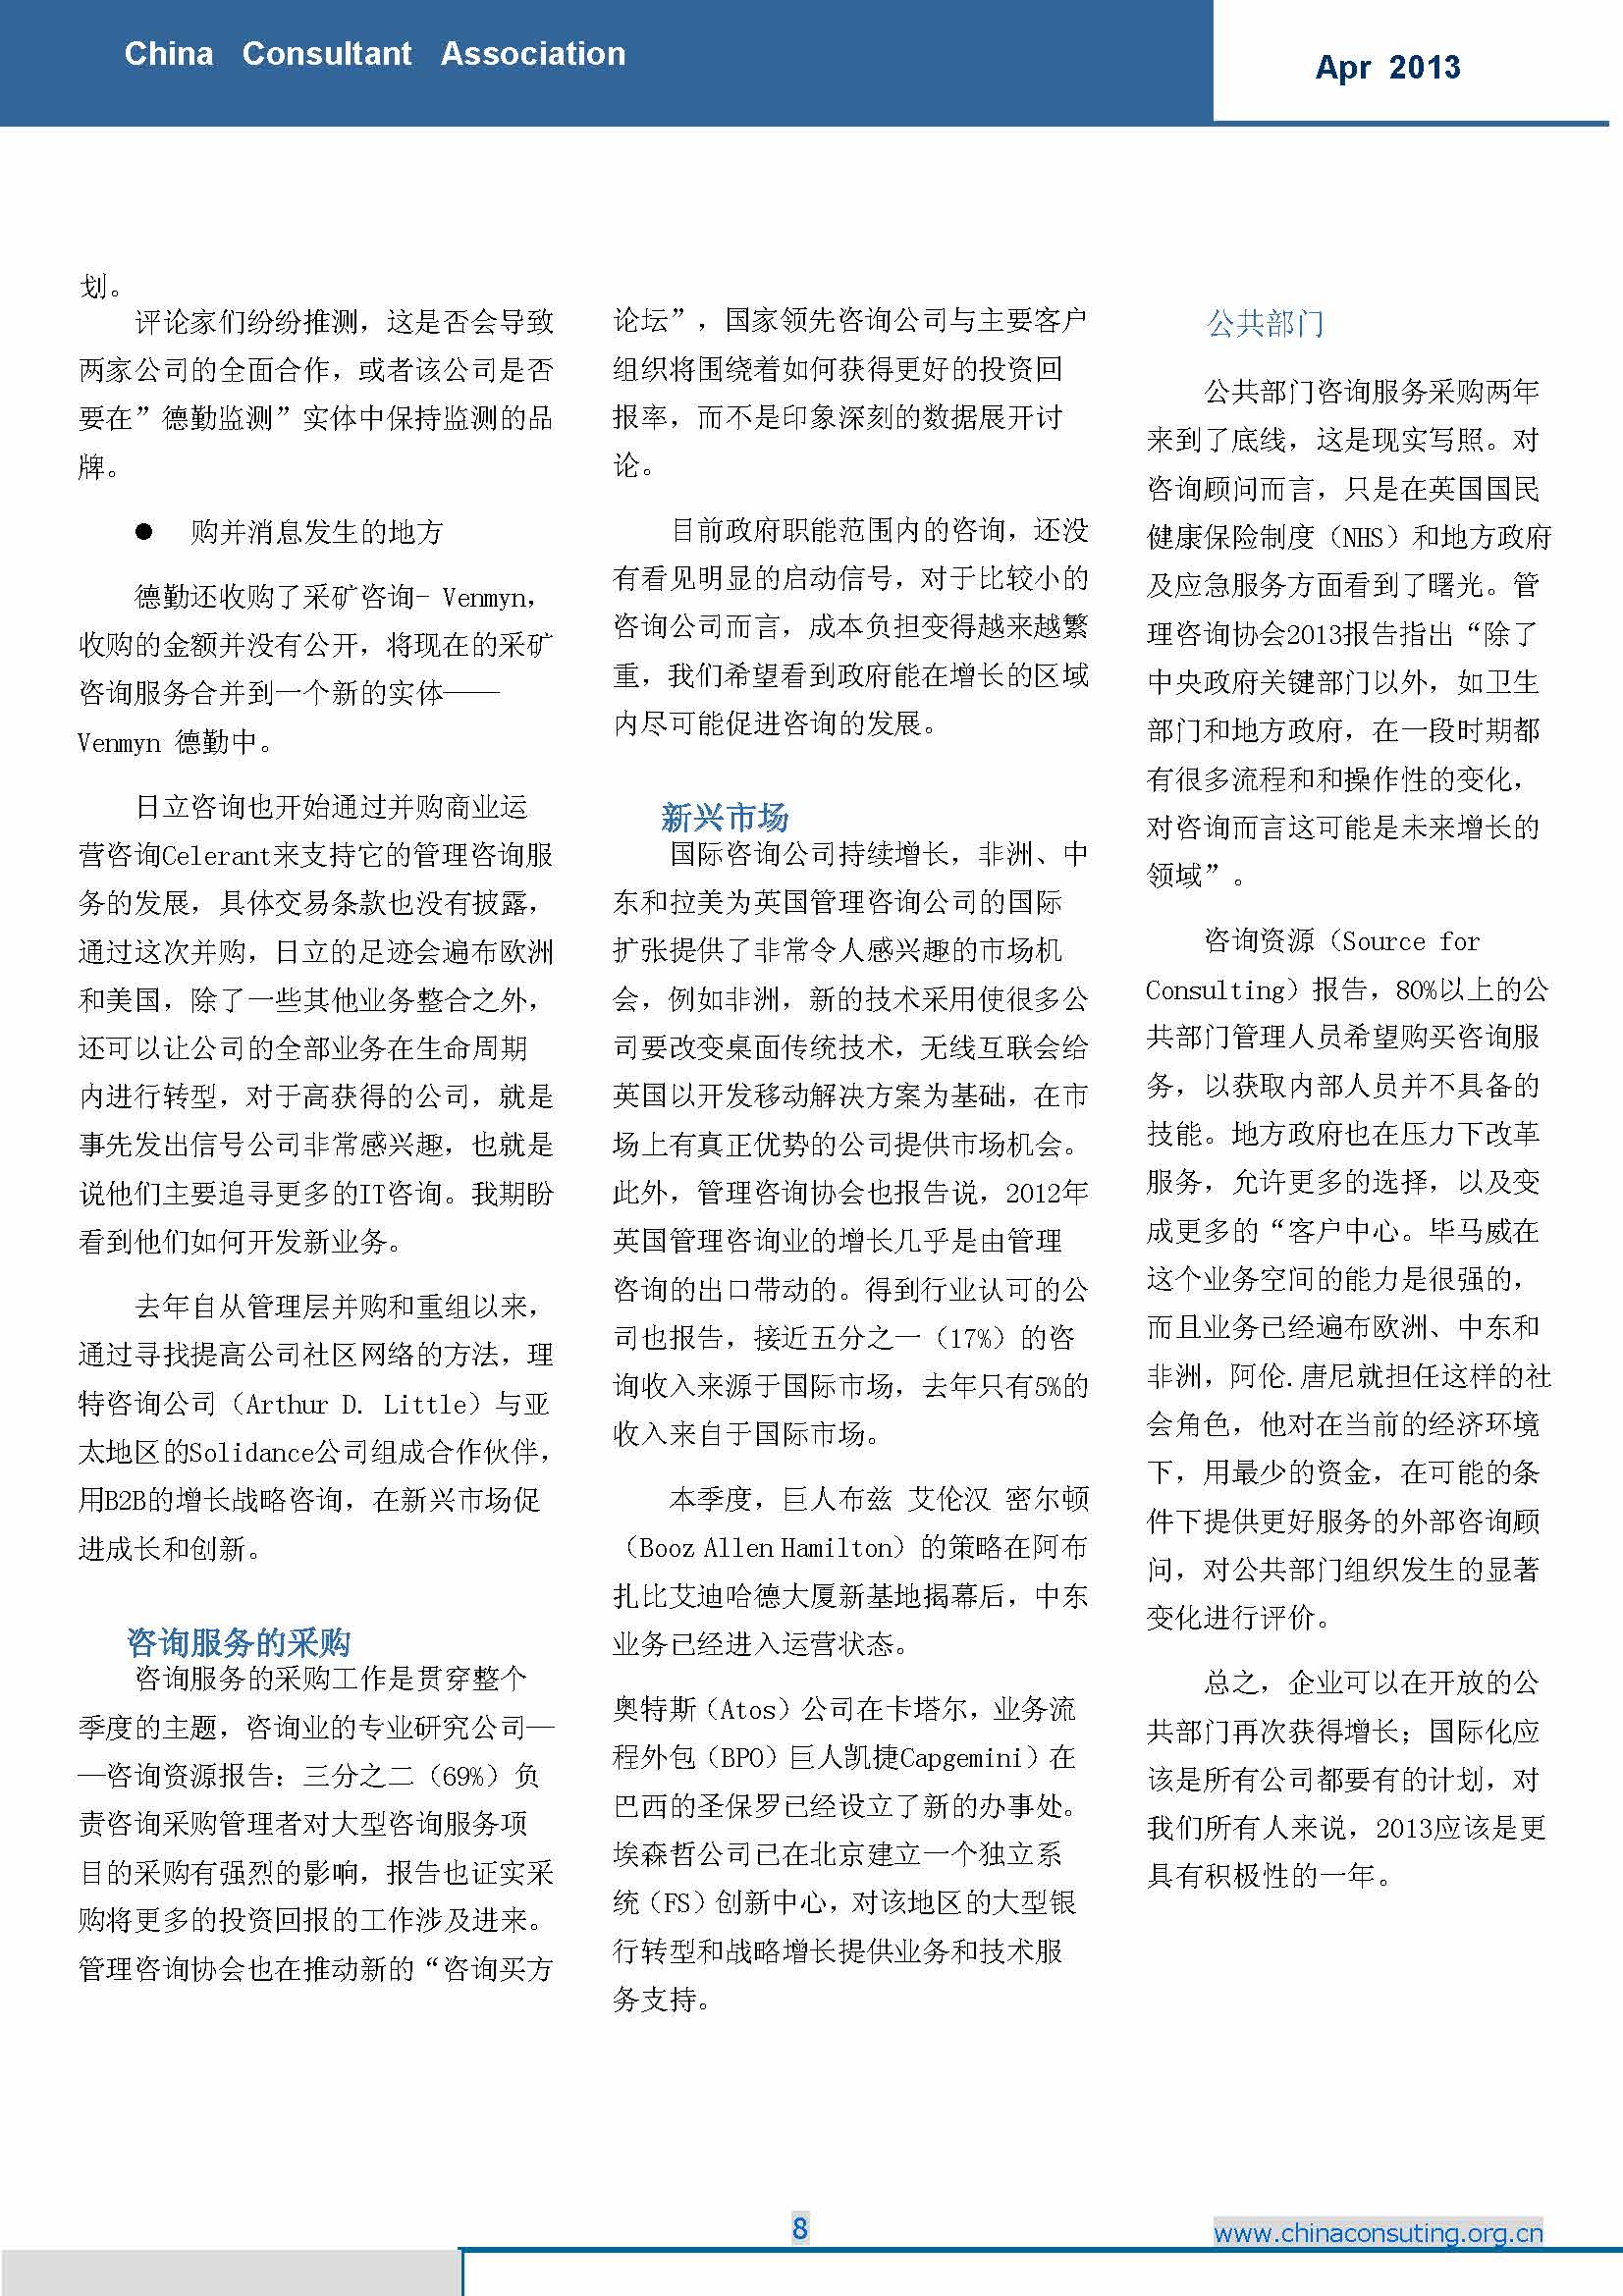 12中国科技咨询协会国际快讯（第十二期）_页面_10.jpg